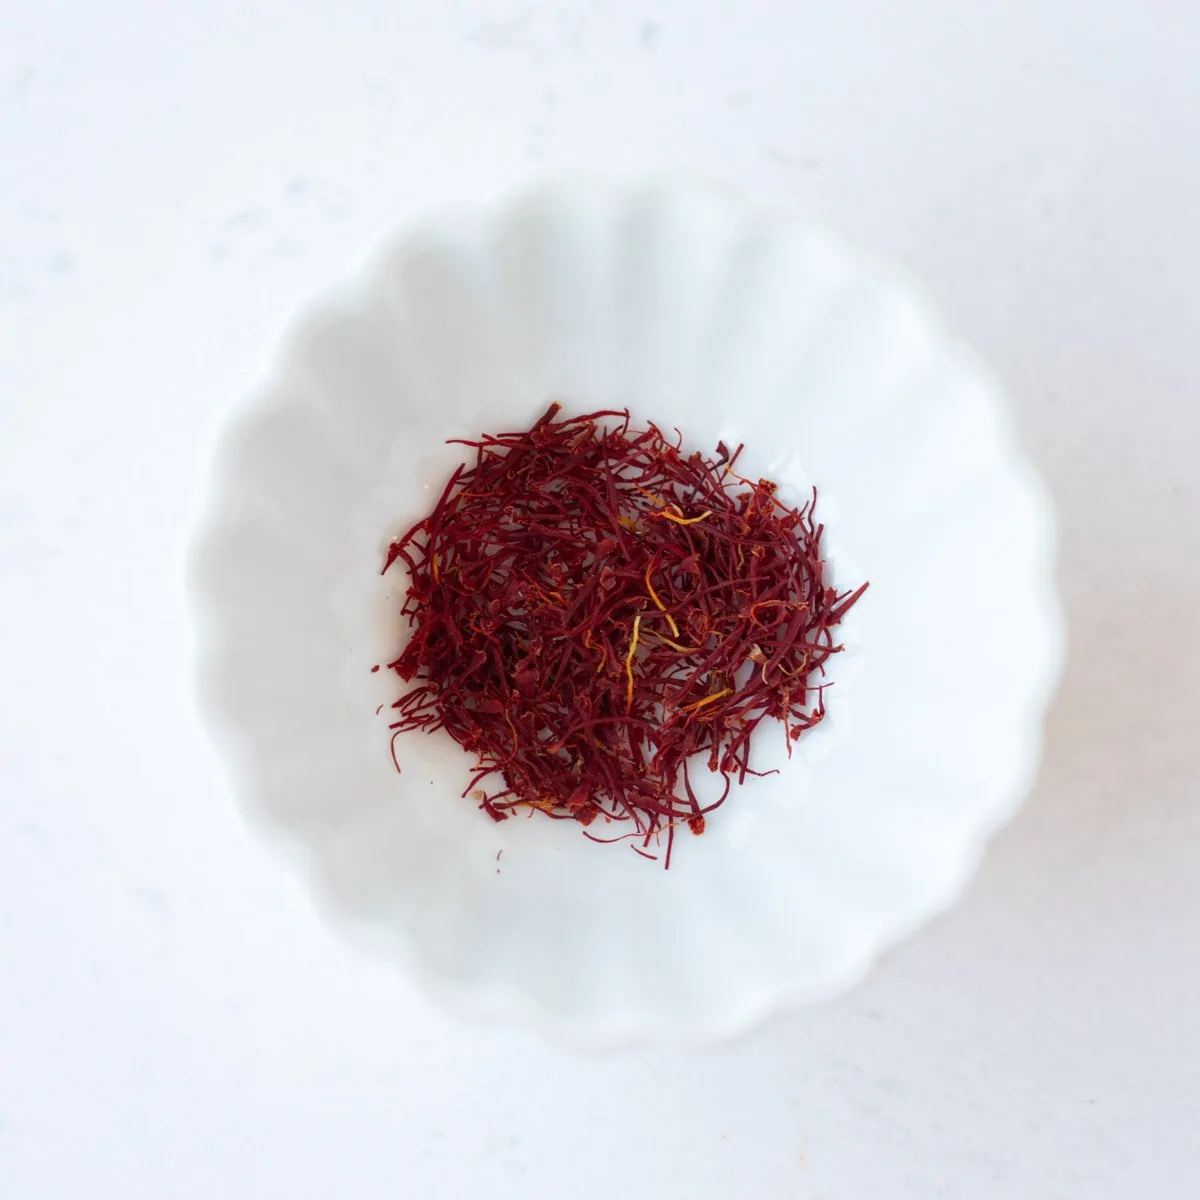 Saffron in a small white bowl.